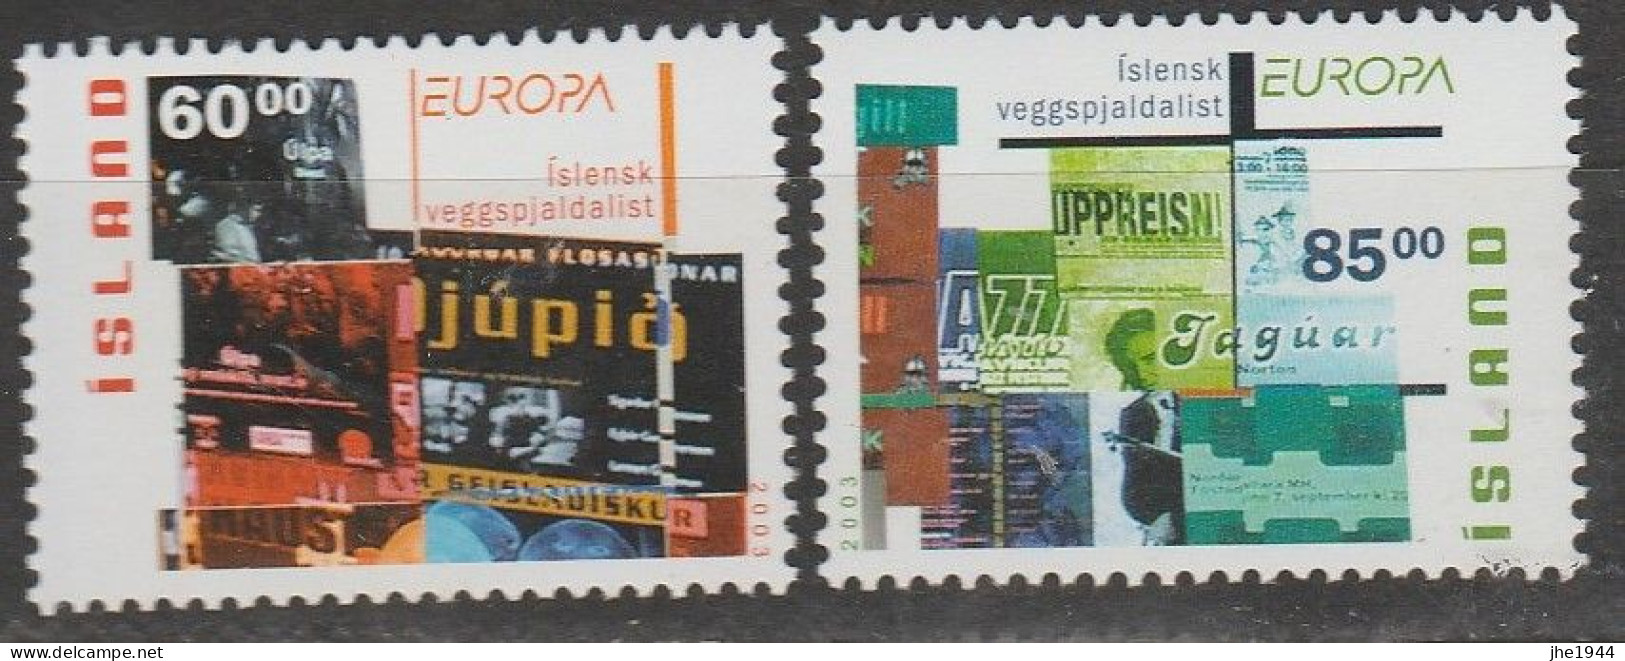 Europa 2003 Art de l'Affiche Voir liste des timbres à vendre **